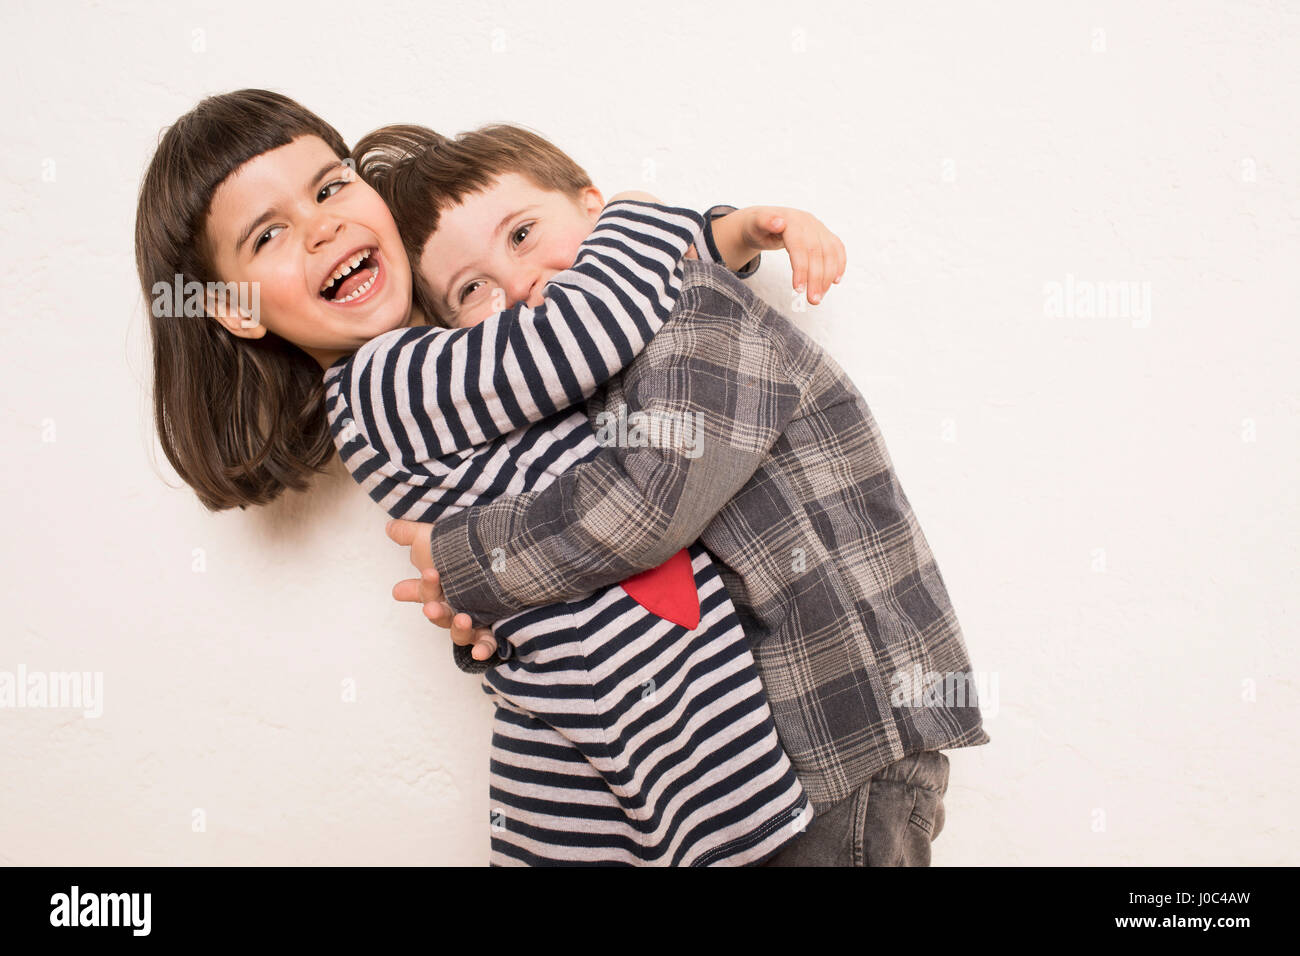 Portrait de jeune fille et garçon, serrant, rire Banque D'Images